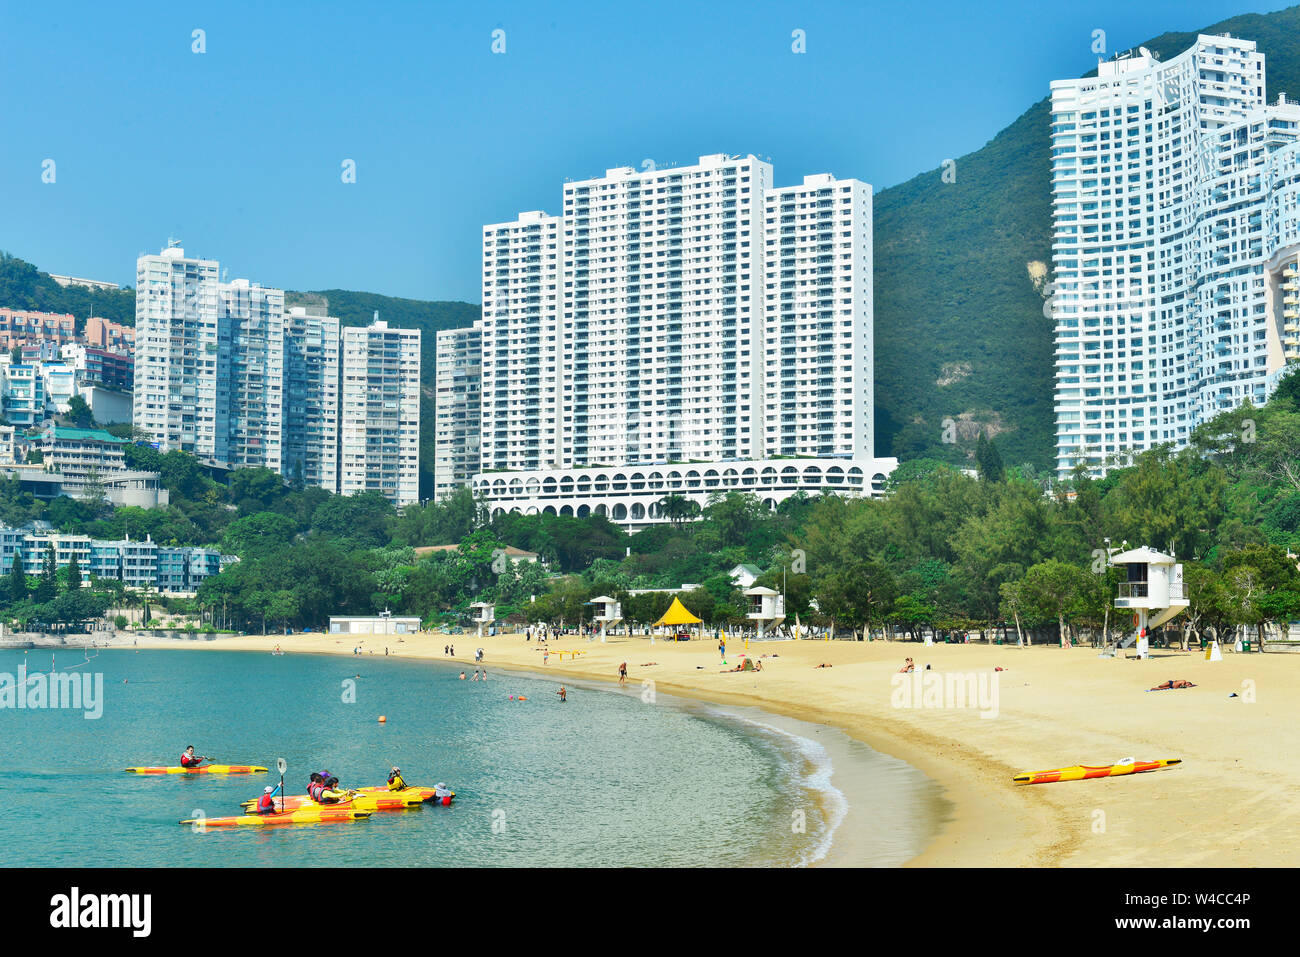 Vue de la plage de Repulse Bay, dans le sud de l'île de Hong Kong Banque D'Images